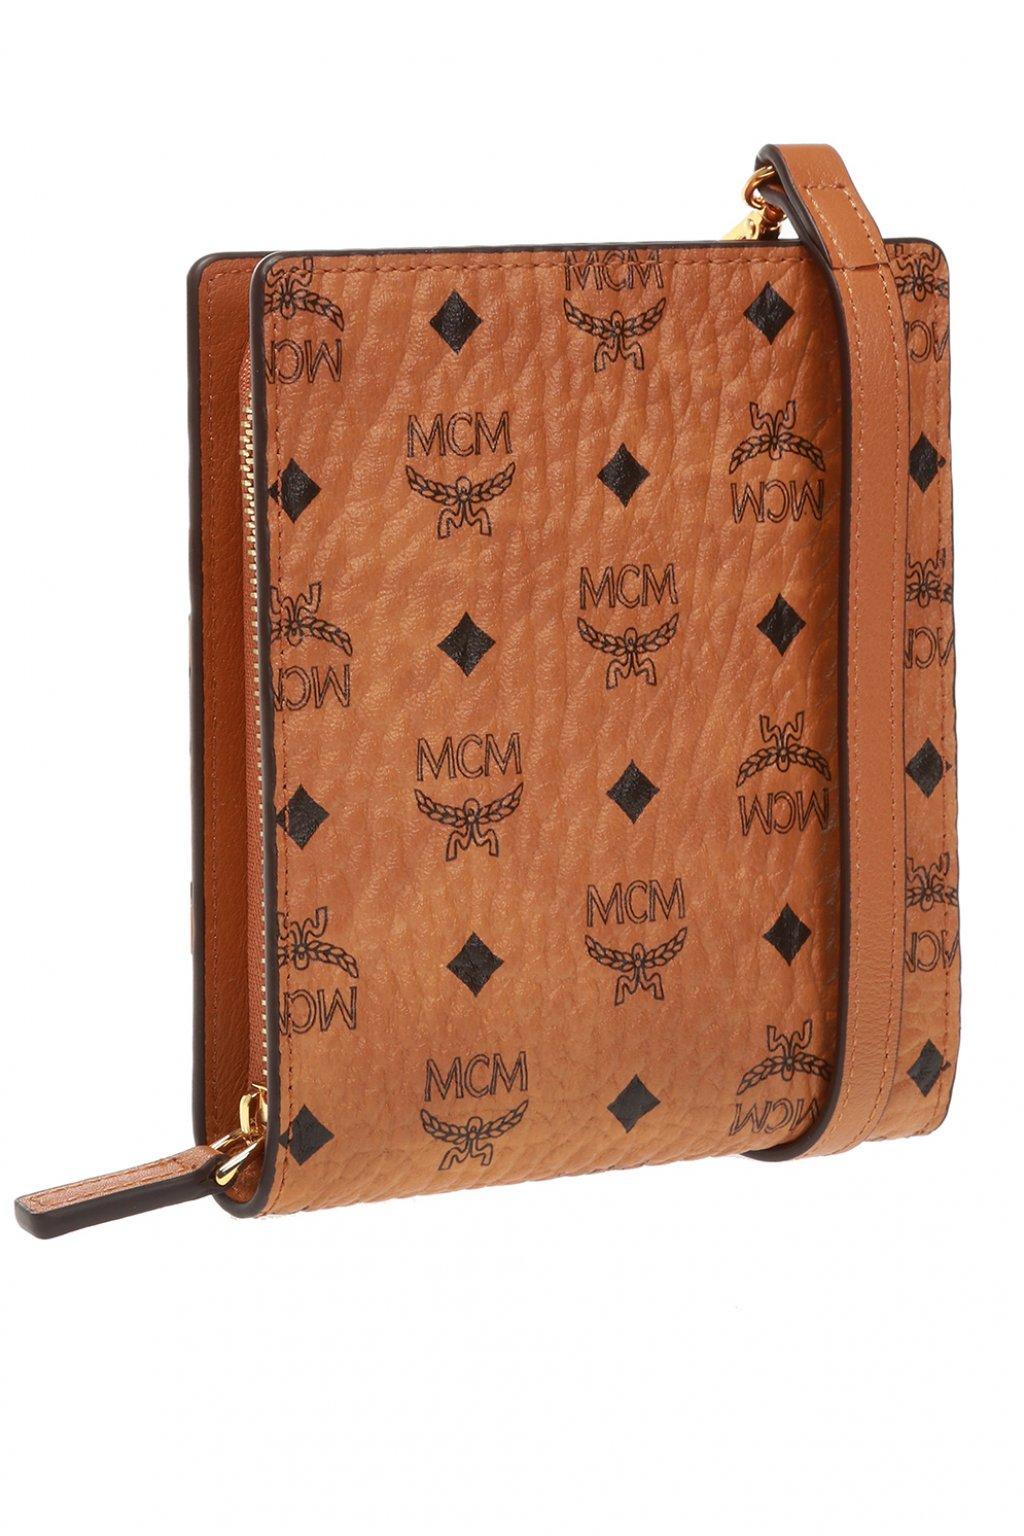 MCM Canvas Branded Shoulder Bag Brown for Men - Lyst